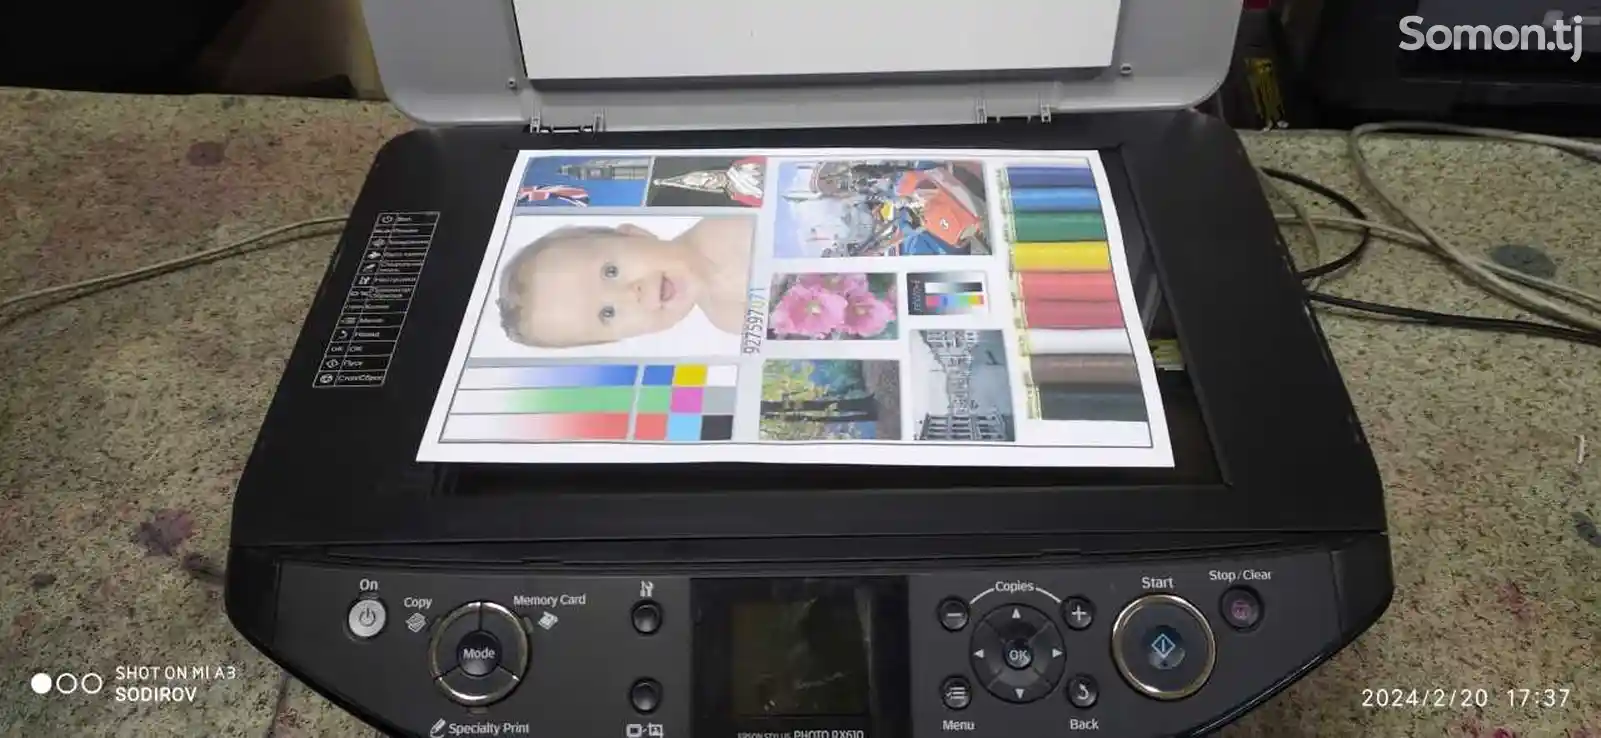 Цветной принтер Епсон Рх615-2